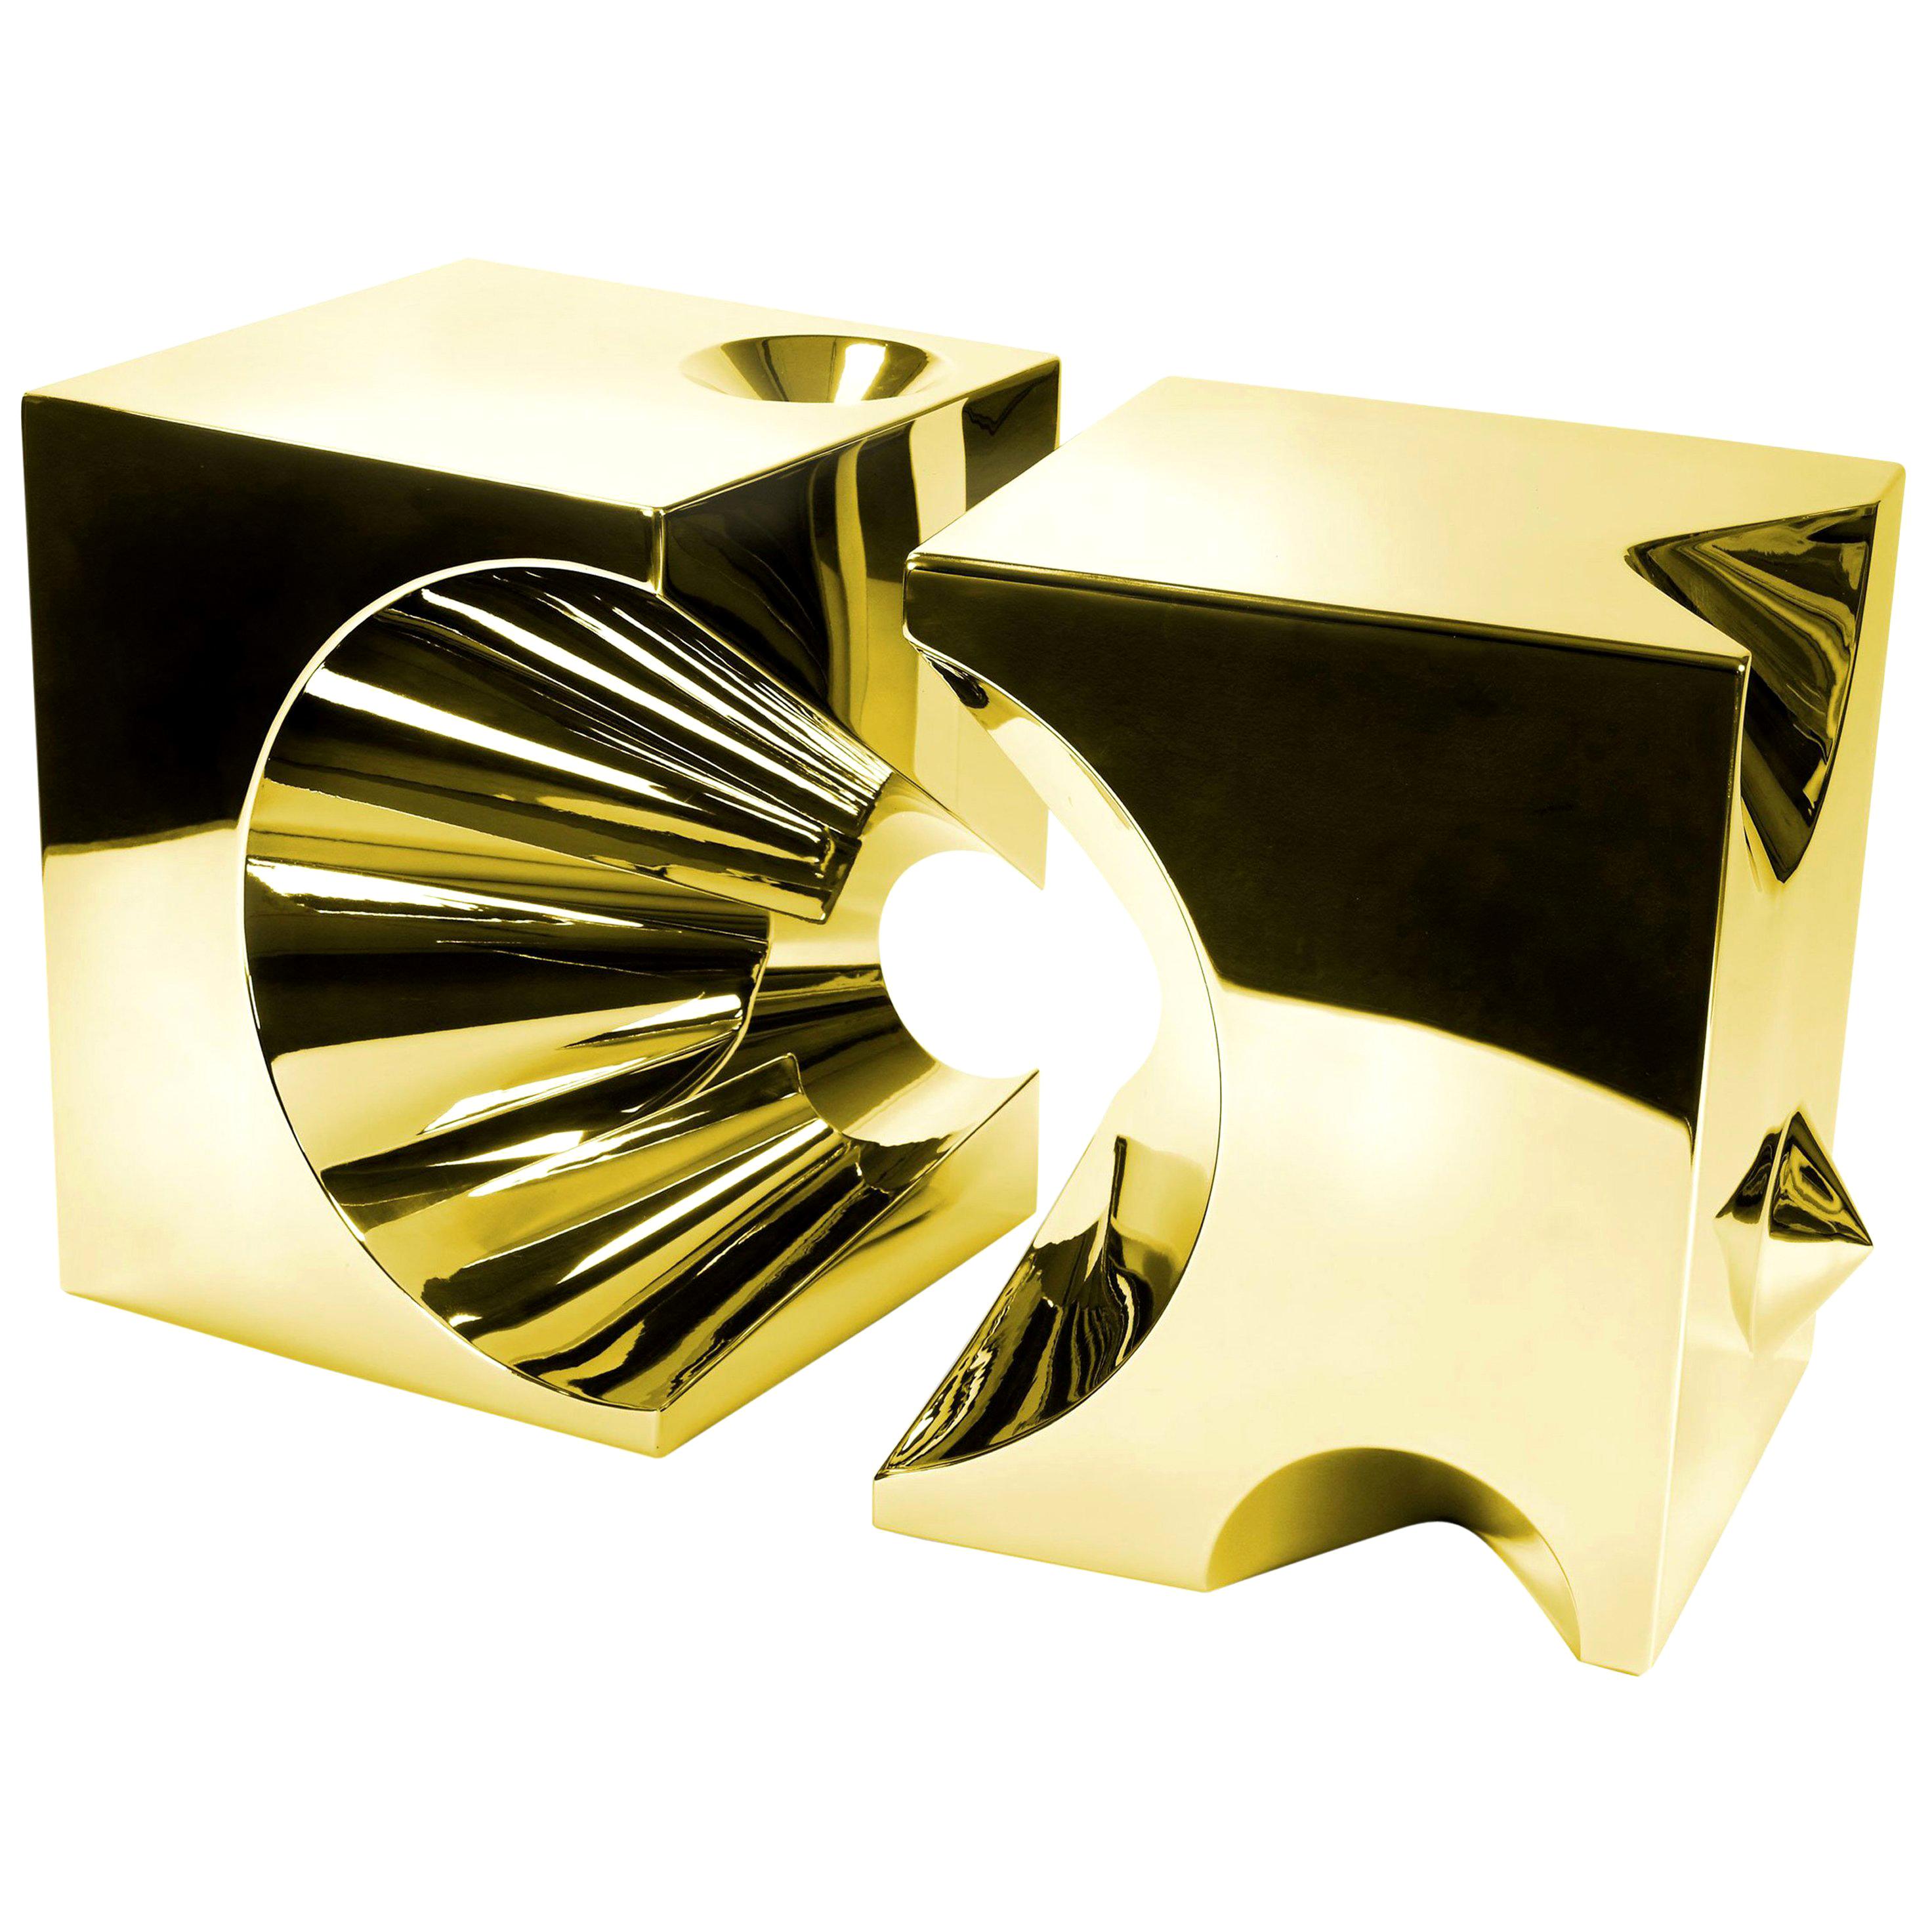 Beistelltisch oder Beistelltisch Abstrakte Skulptur Goldspiegel Stahl Würfel Sammlerstück Design